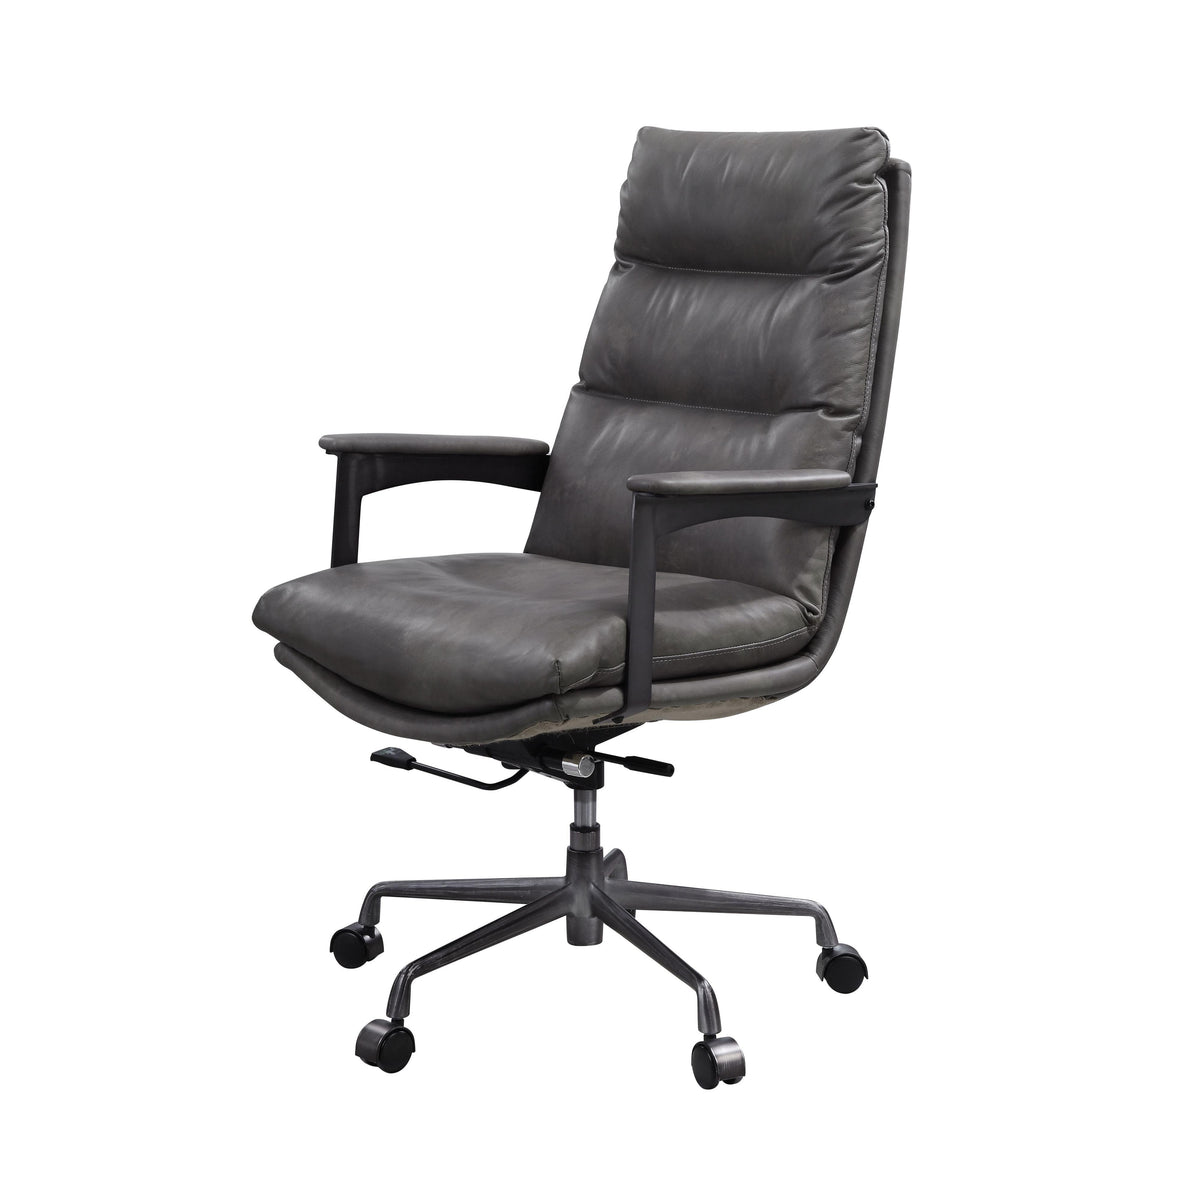 Acme Furniture Crursa 93170 Office Chair